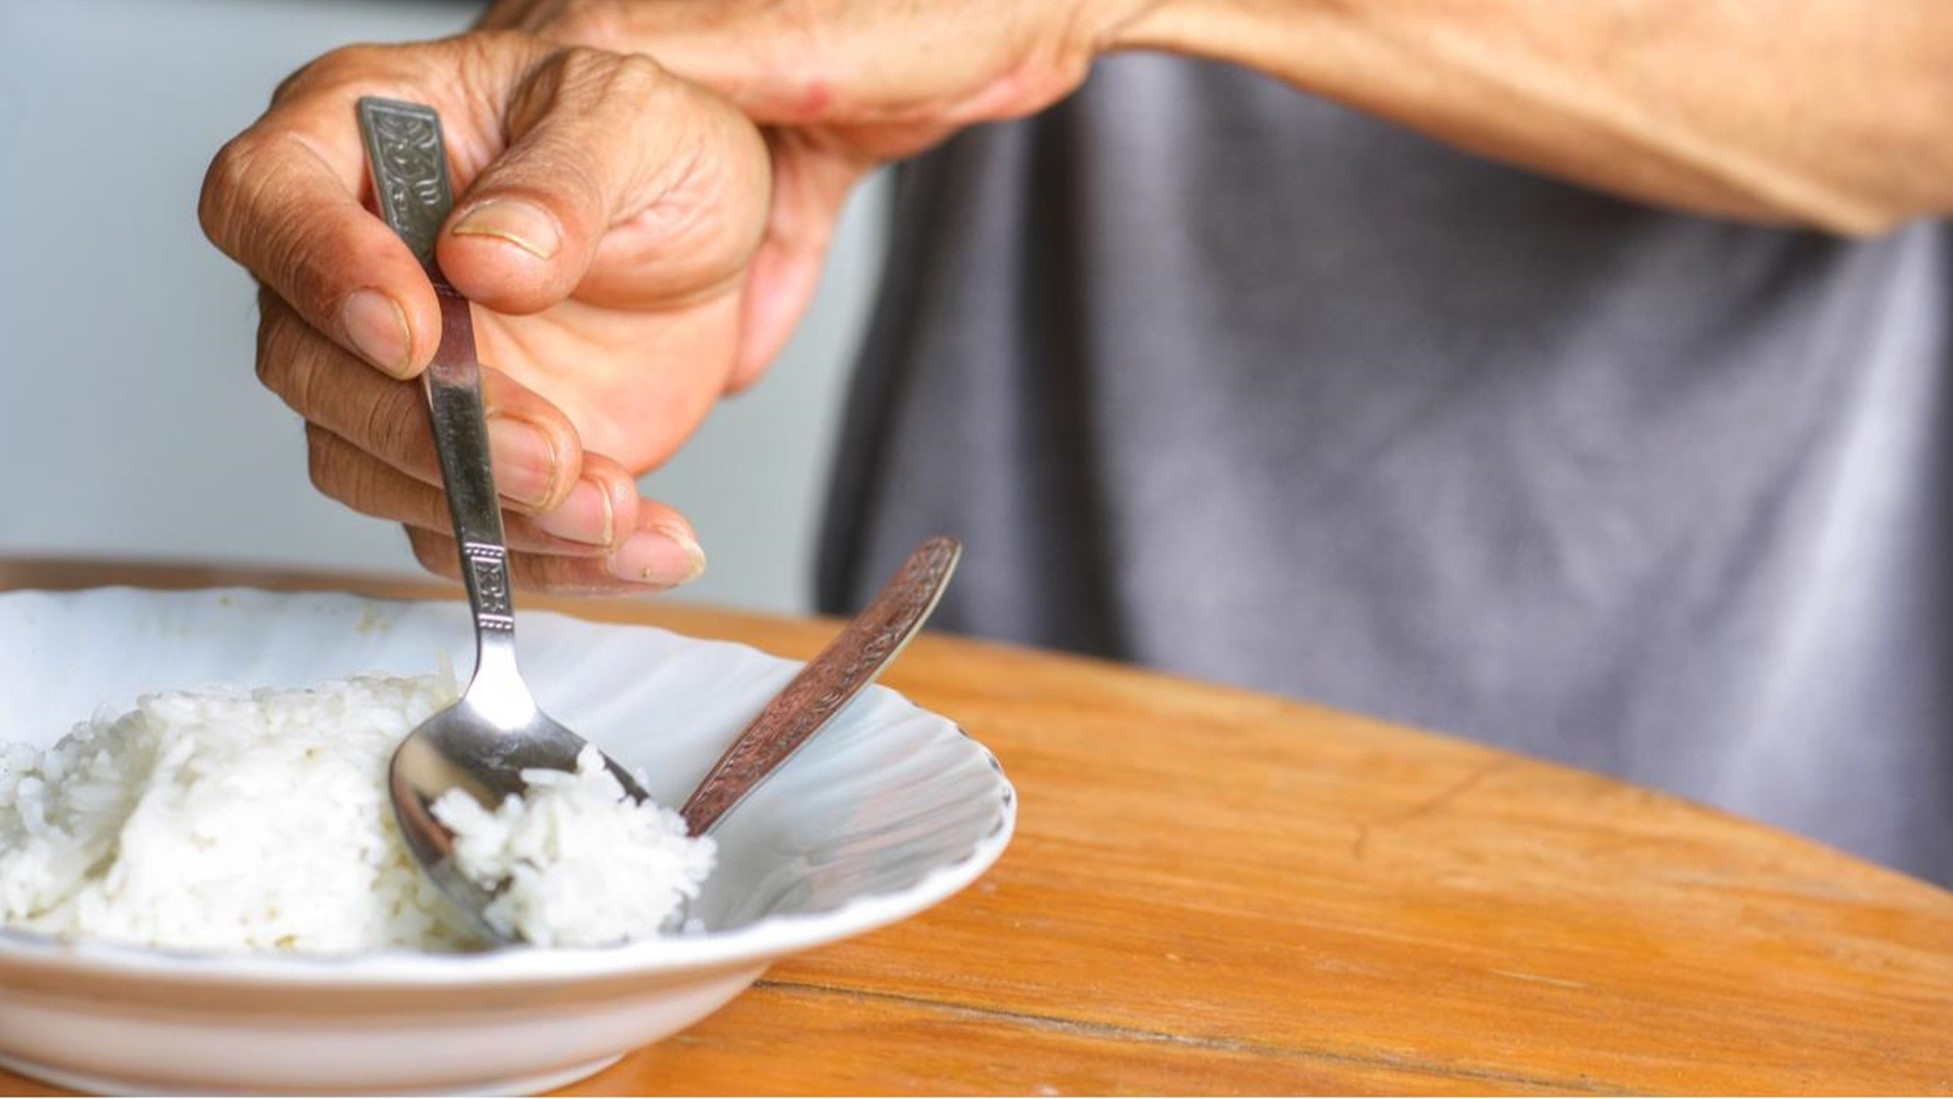 Các loại thực phẩm nào giúp hỗ trợ sức khỏe cho người bị bệnh Parkinson?
